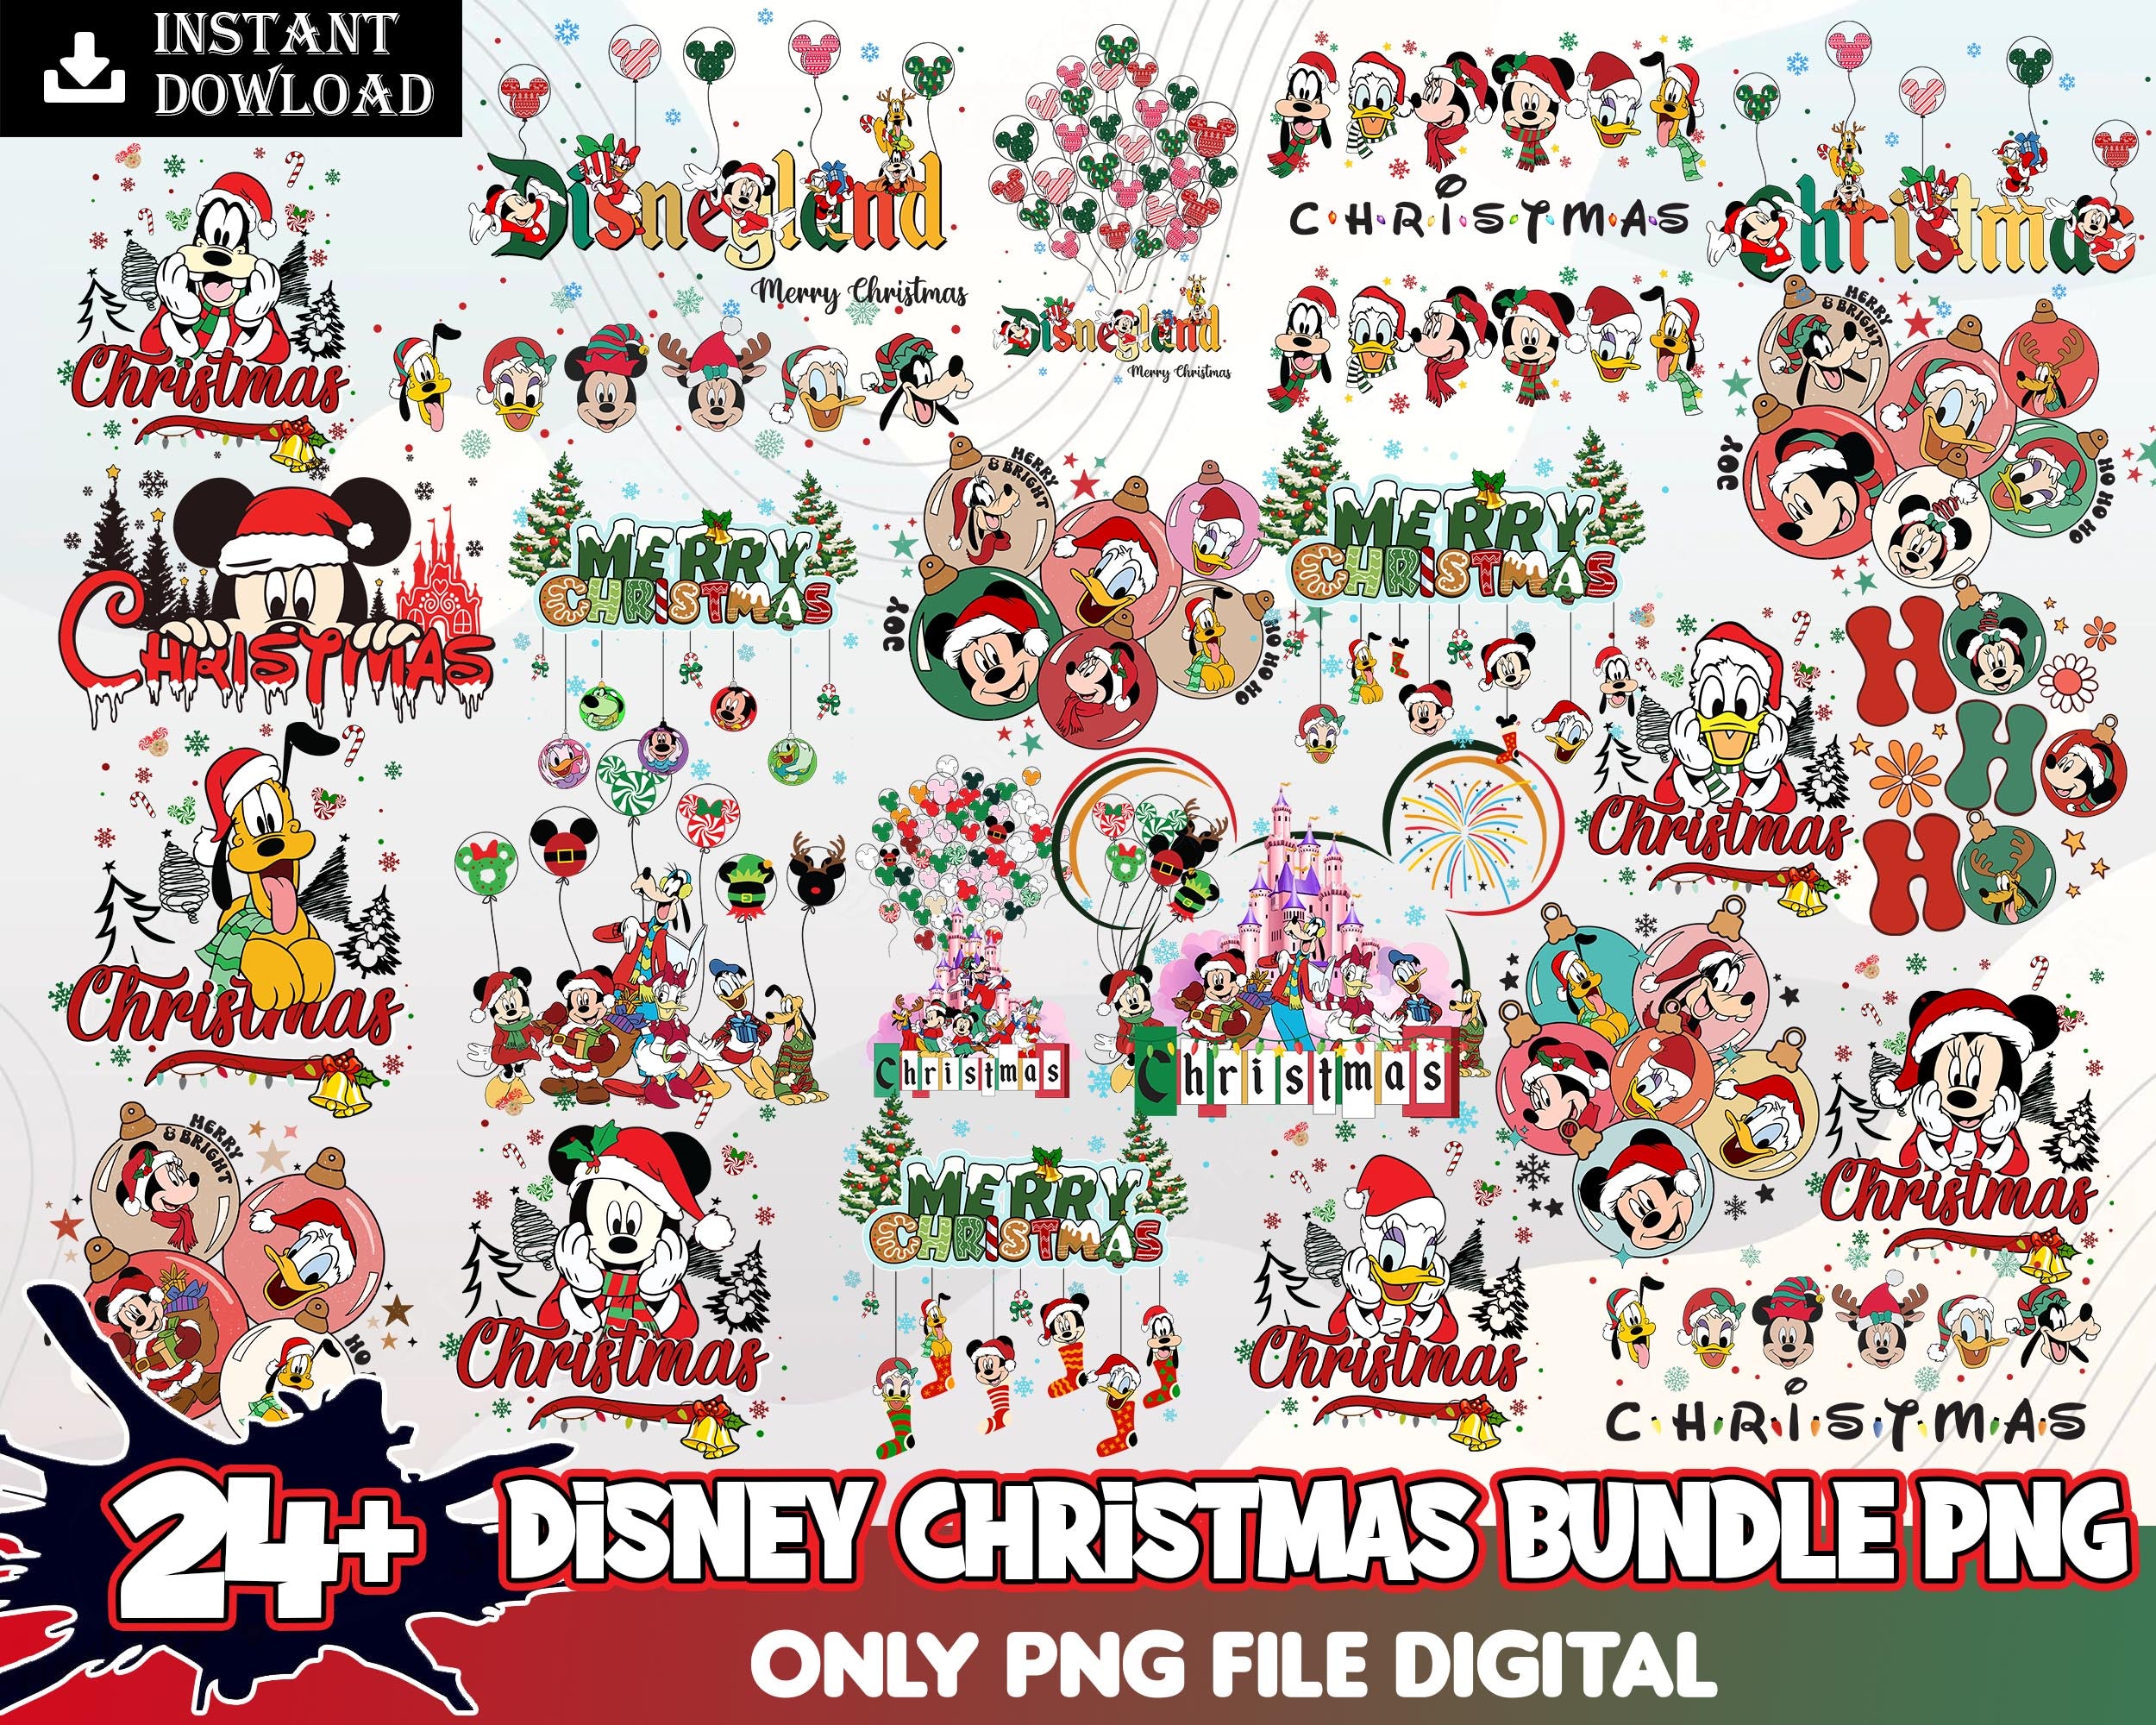 24+ Christmas Disney PNG Bundle, Christmas png, Holiday png, Winter png, Christmas Sign Svg, Christmas Quotes, Cut File, Cricut, Silhouette